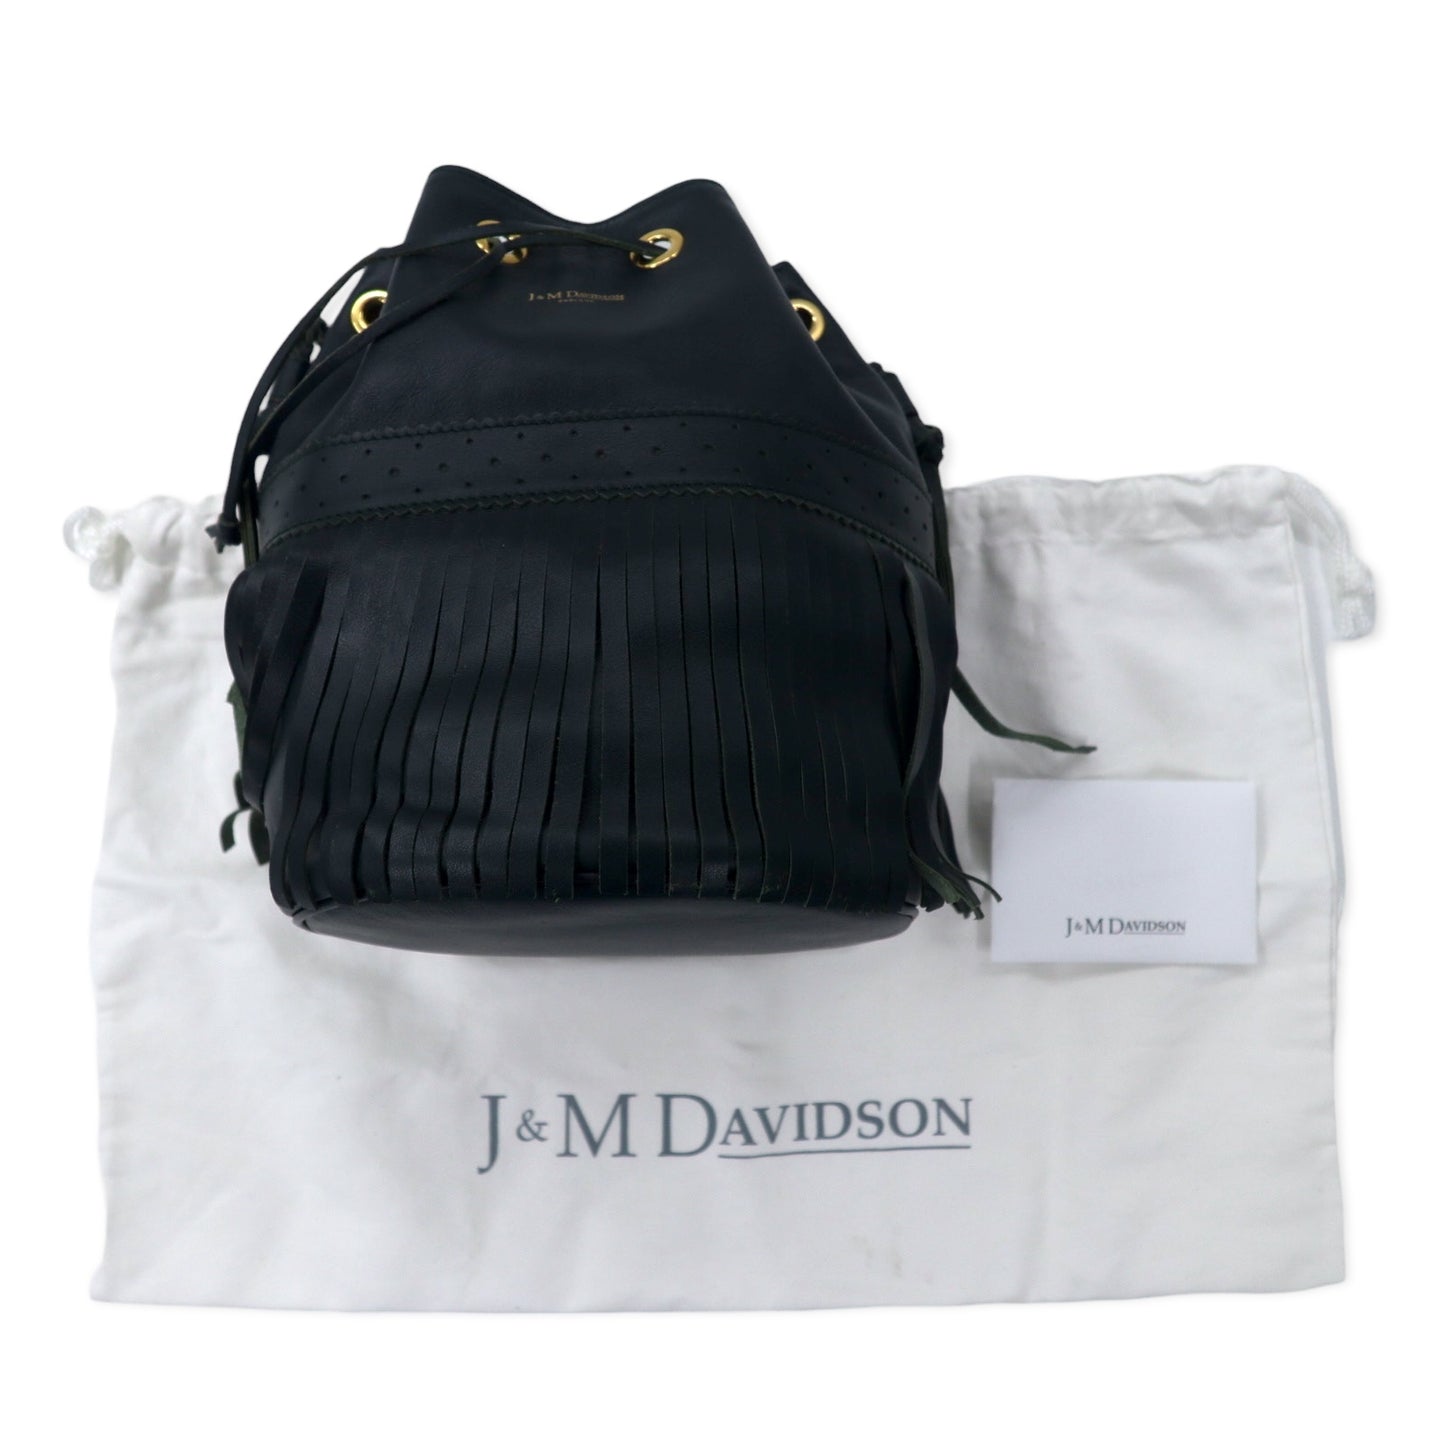 J&M DAVIDSON フリンジ カーニバル ショルダーバッグ 巾着 グリーン レザー CARNIVAL